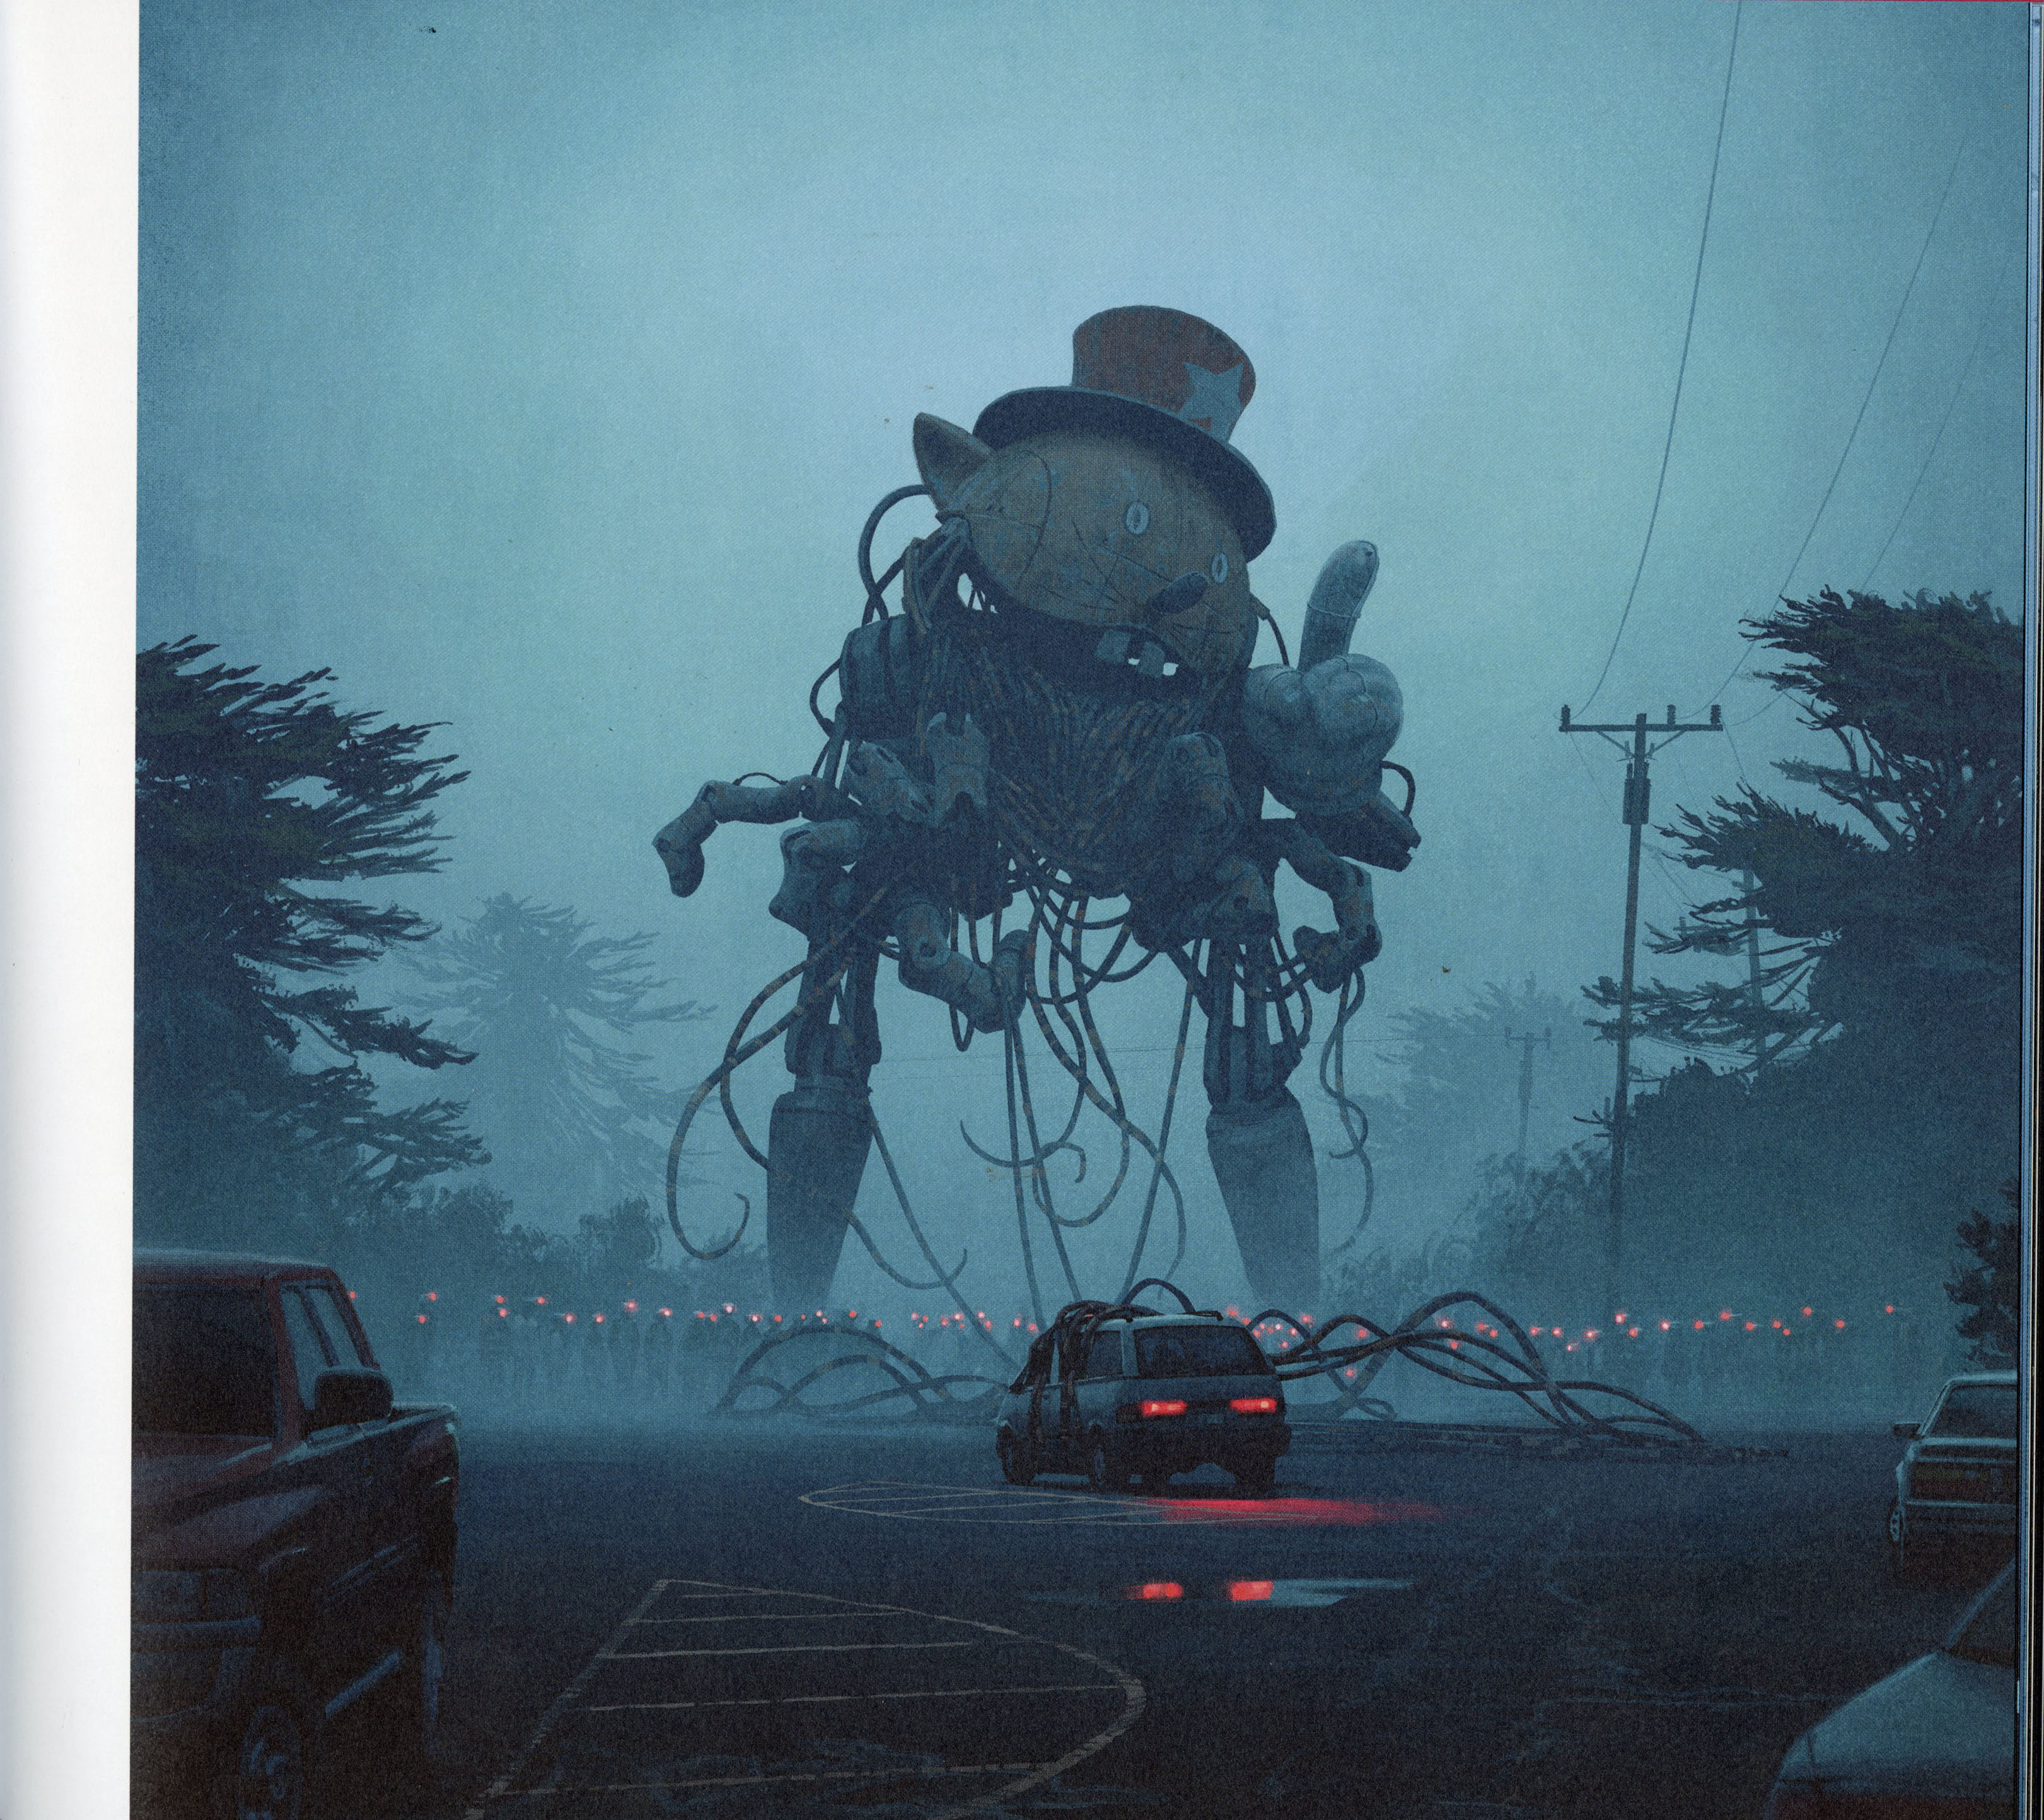 Simon Stålenhagin Liittymiä-teoksen kuva, jossa valtava robotti on kietonut auton jonkinlaisiin köysiin tai johtoihin.